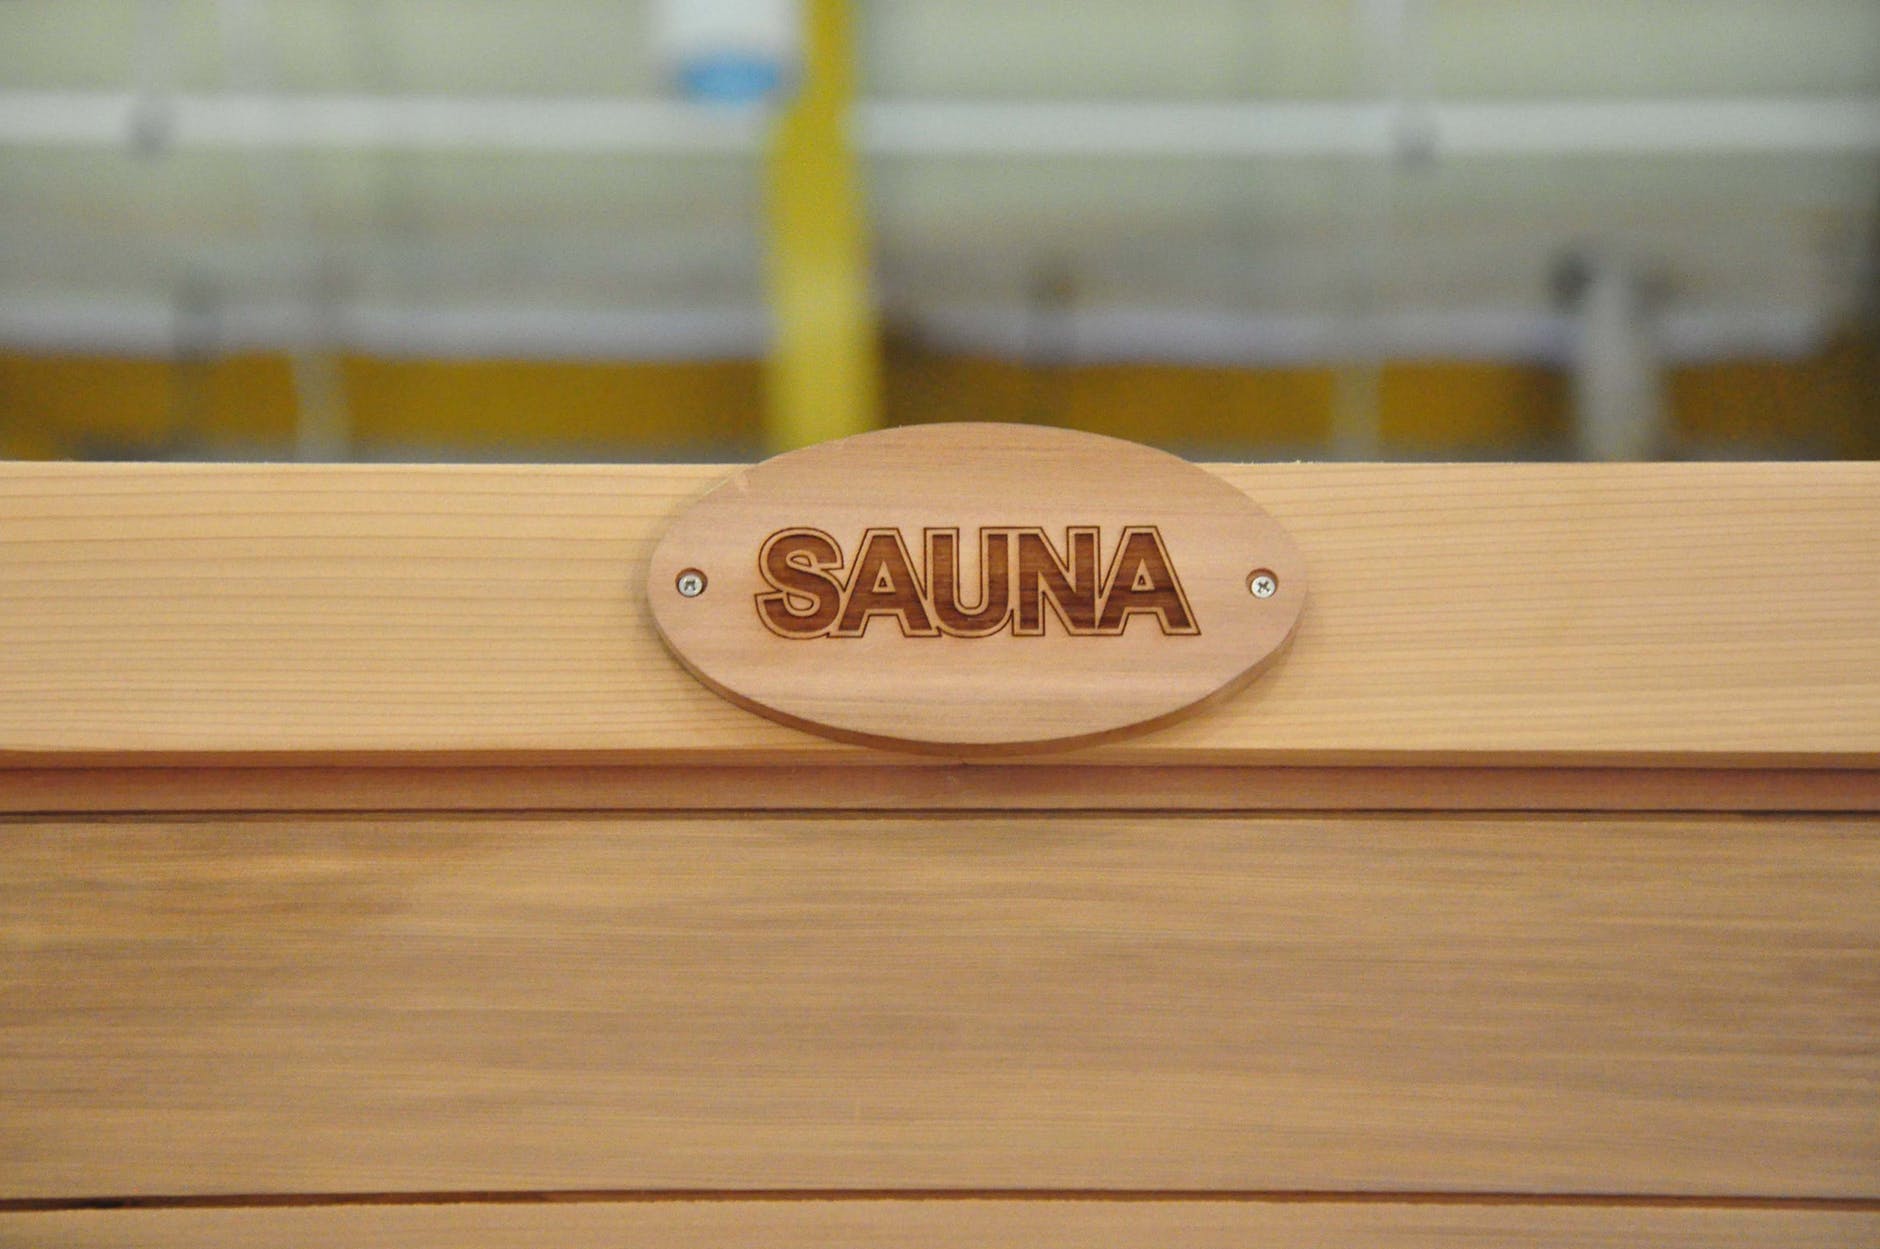 Je sauna vhodná pro běžce? 